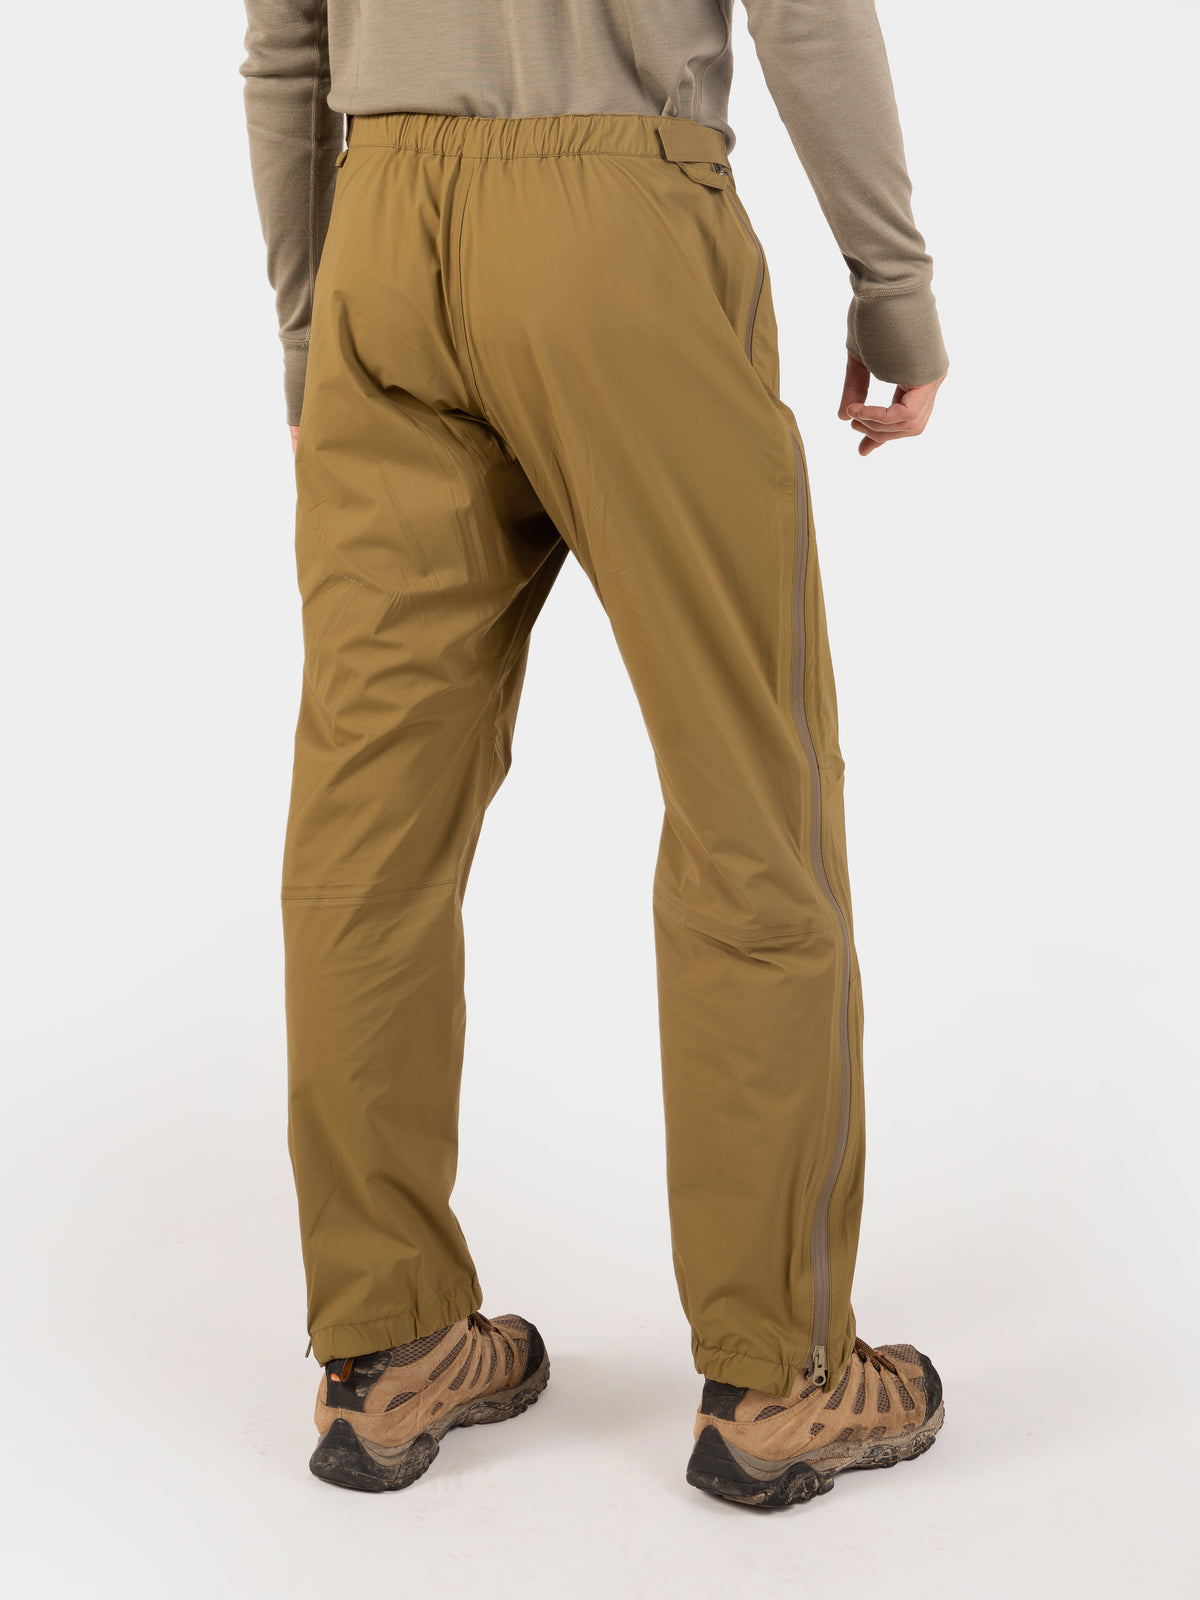 Men's Ultralight Waterproof Storm Pants